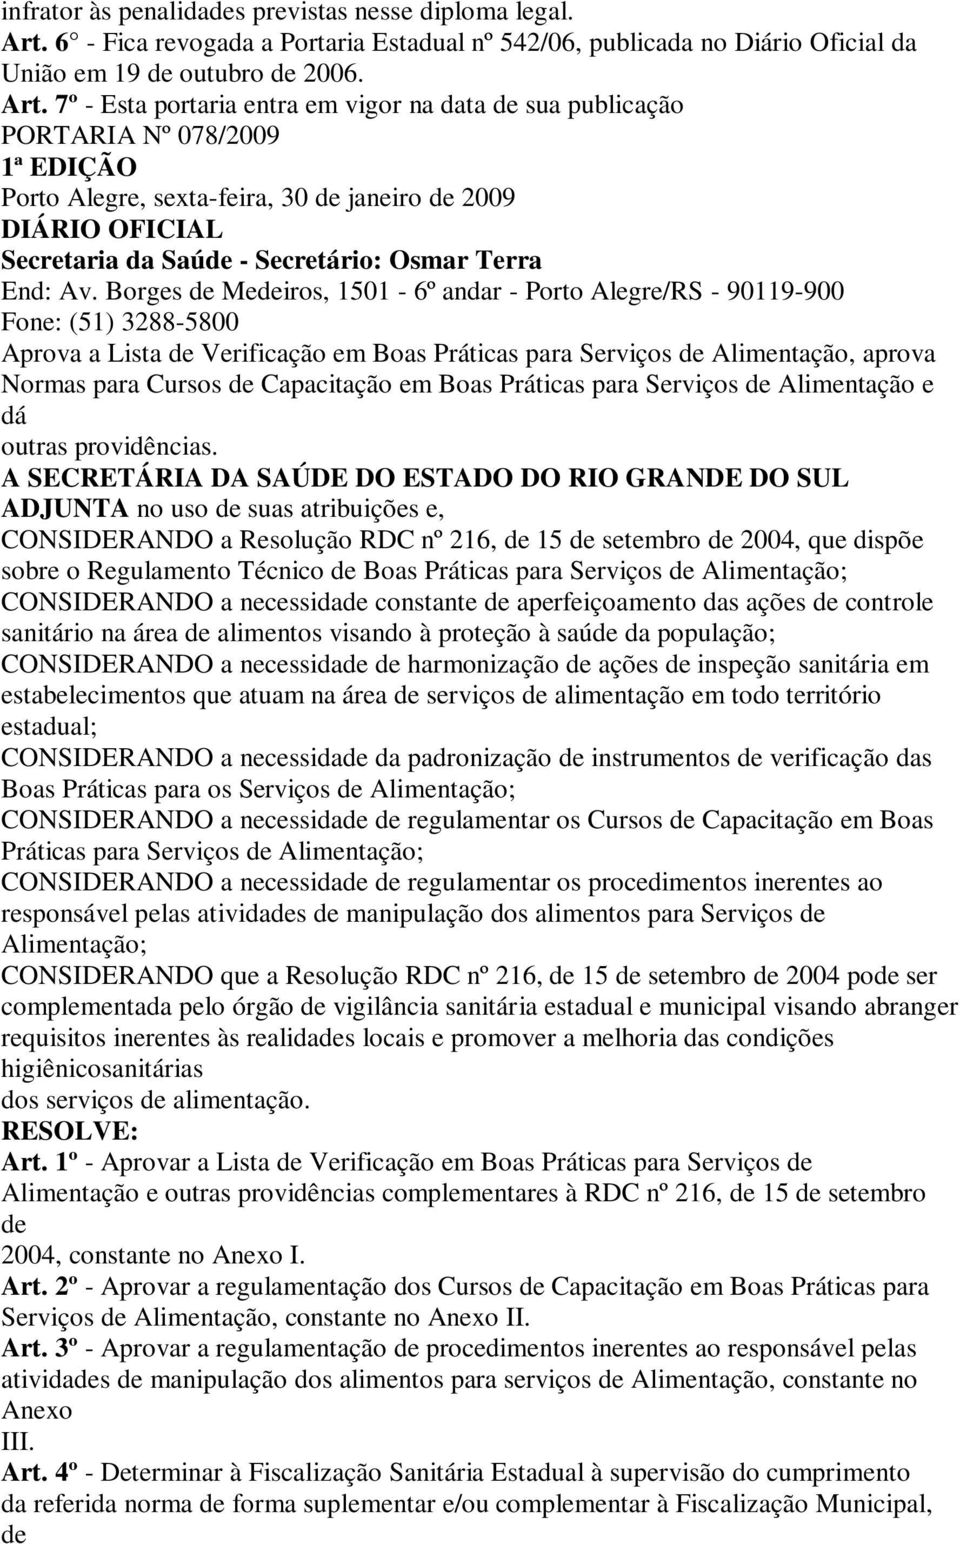 7º - Esta portaria entra em vigor na data sua publicação PORTARIA Nº 078/2009 1ª EDIÇÃO Porto Alegre, sexta-feira, 30 janeiro 2009 DIÁRIO OFICIAL Secretaria da Saú - Secretário: Osmar Terra End: Av.